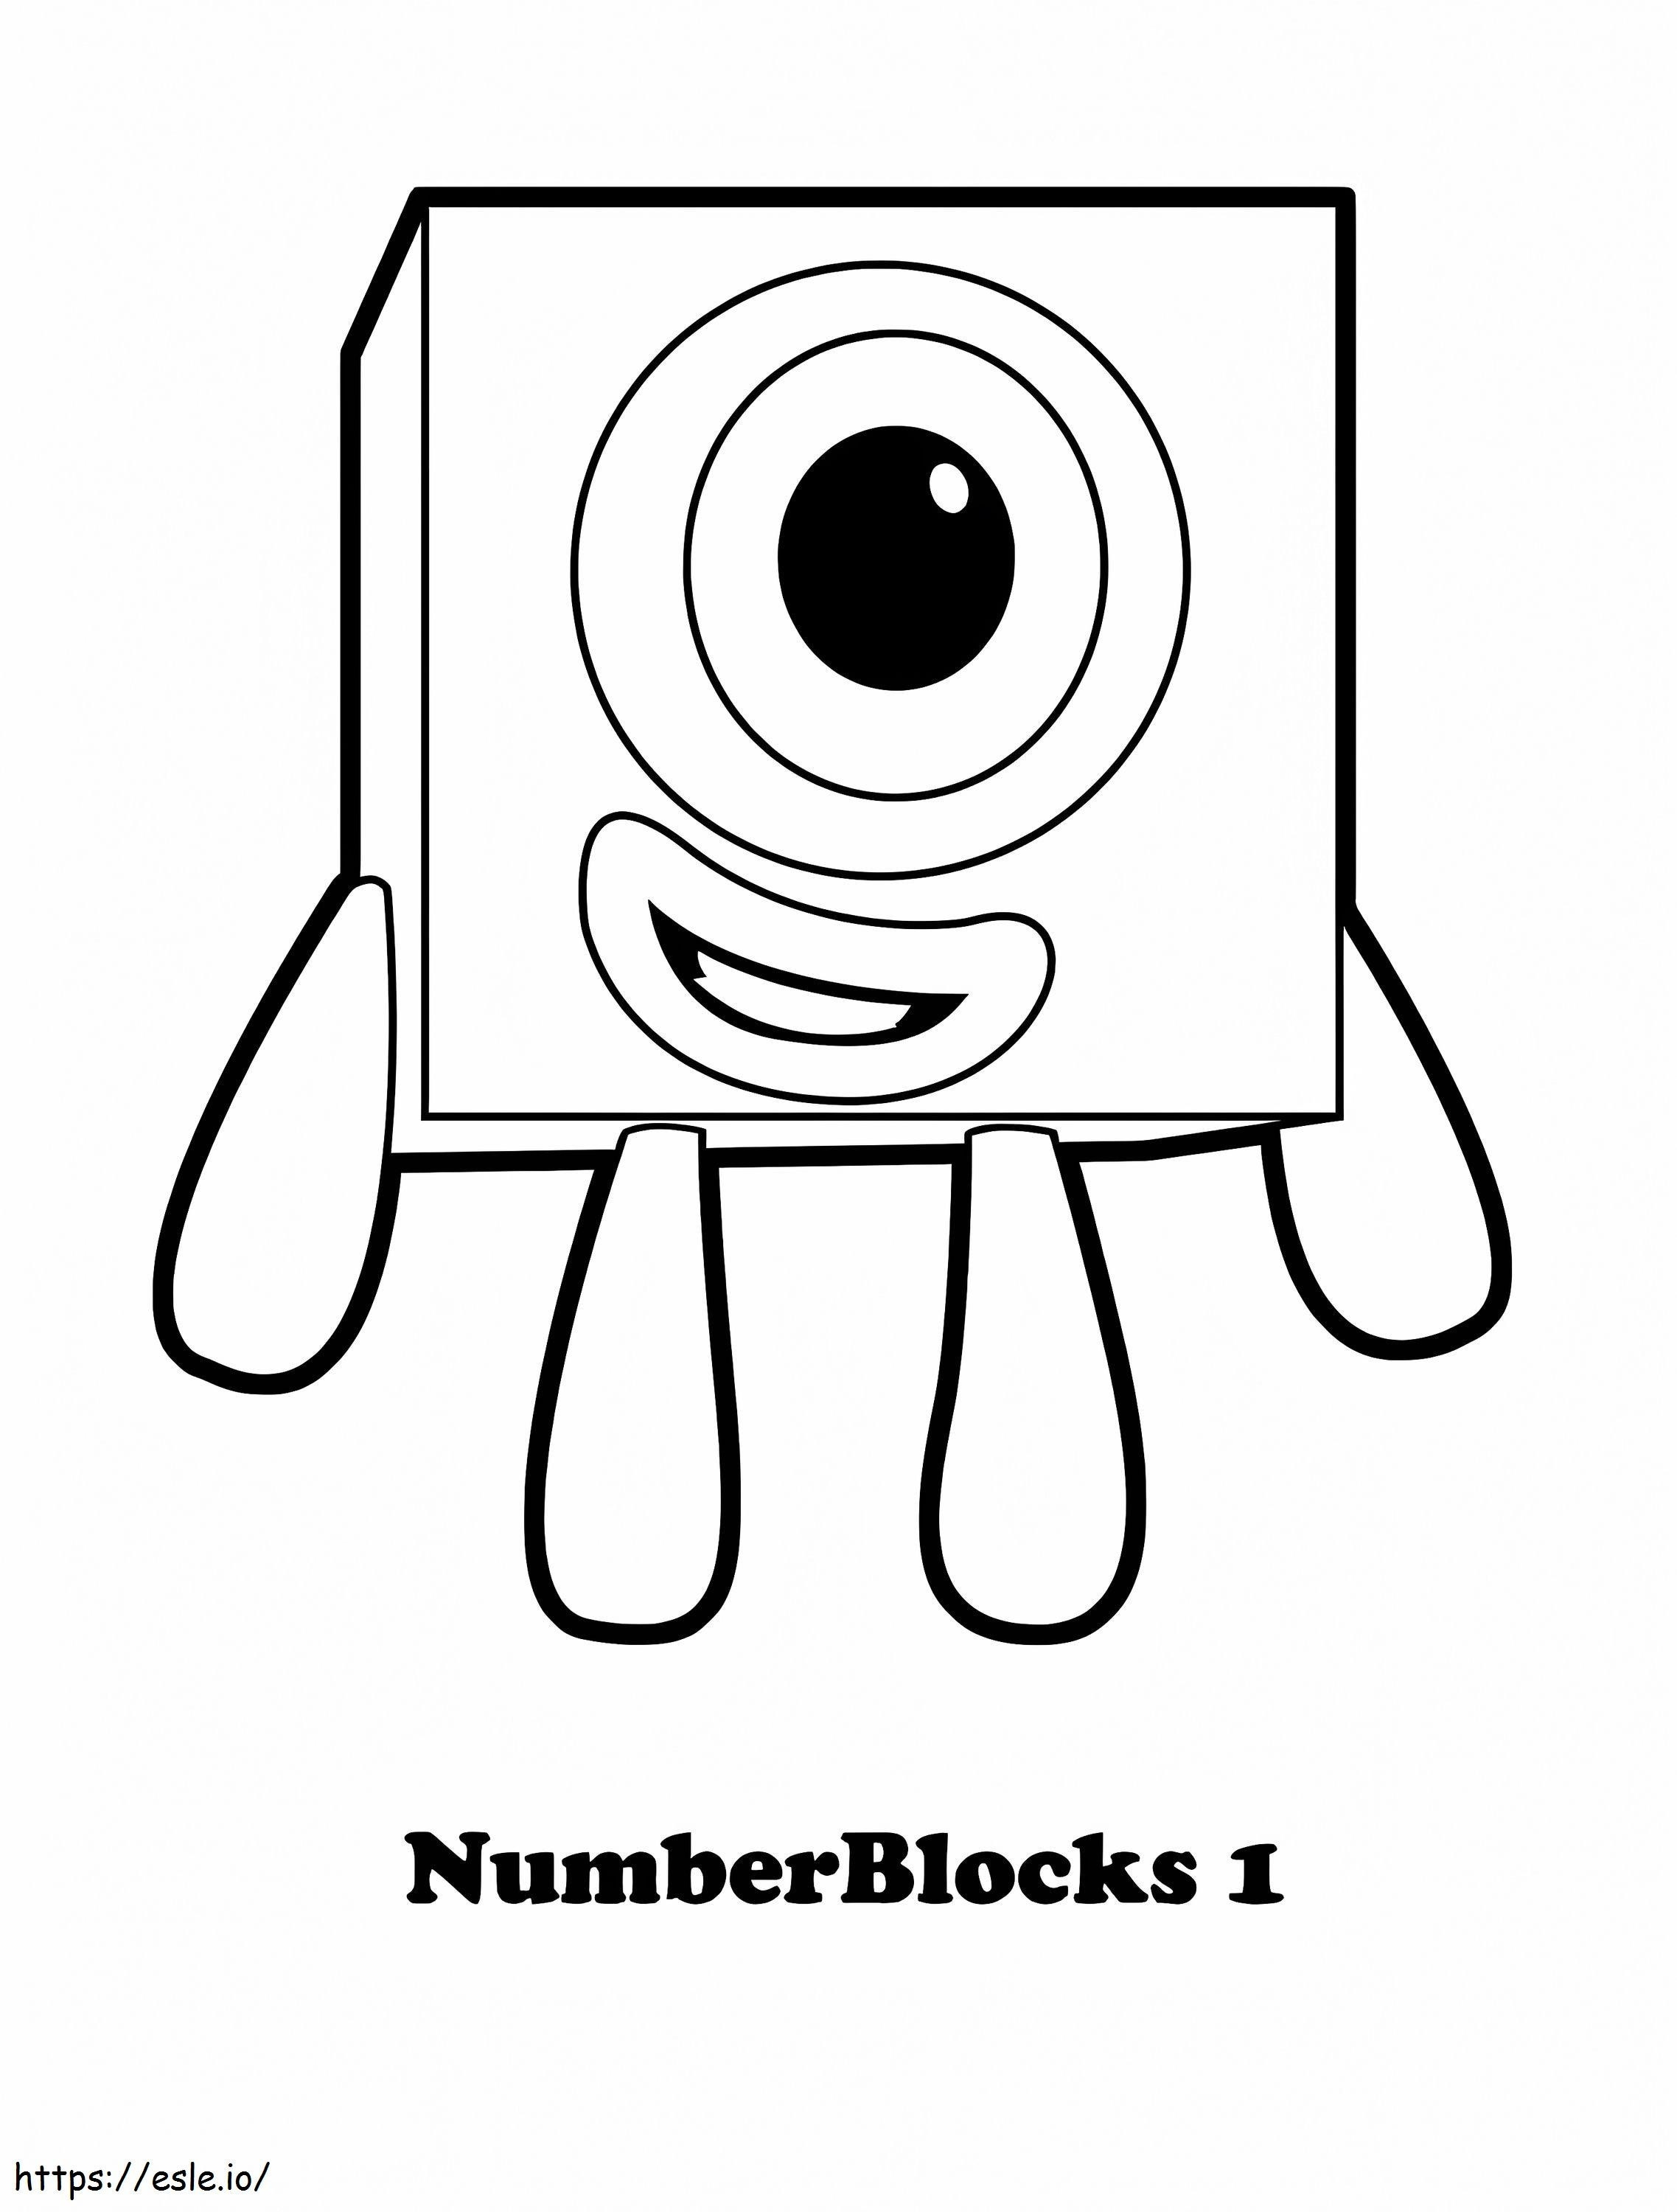 Sayı Blokları 1 boyama